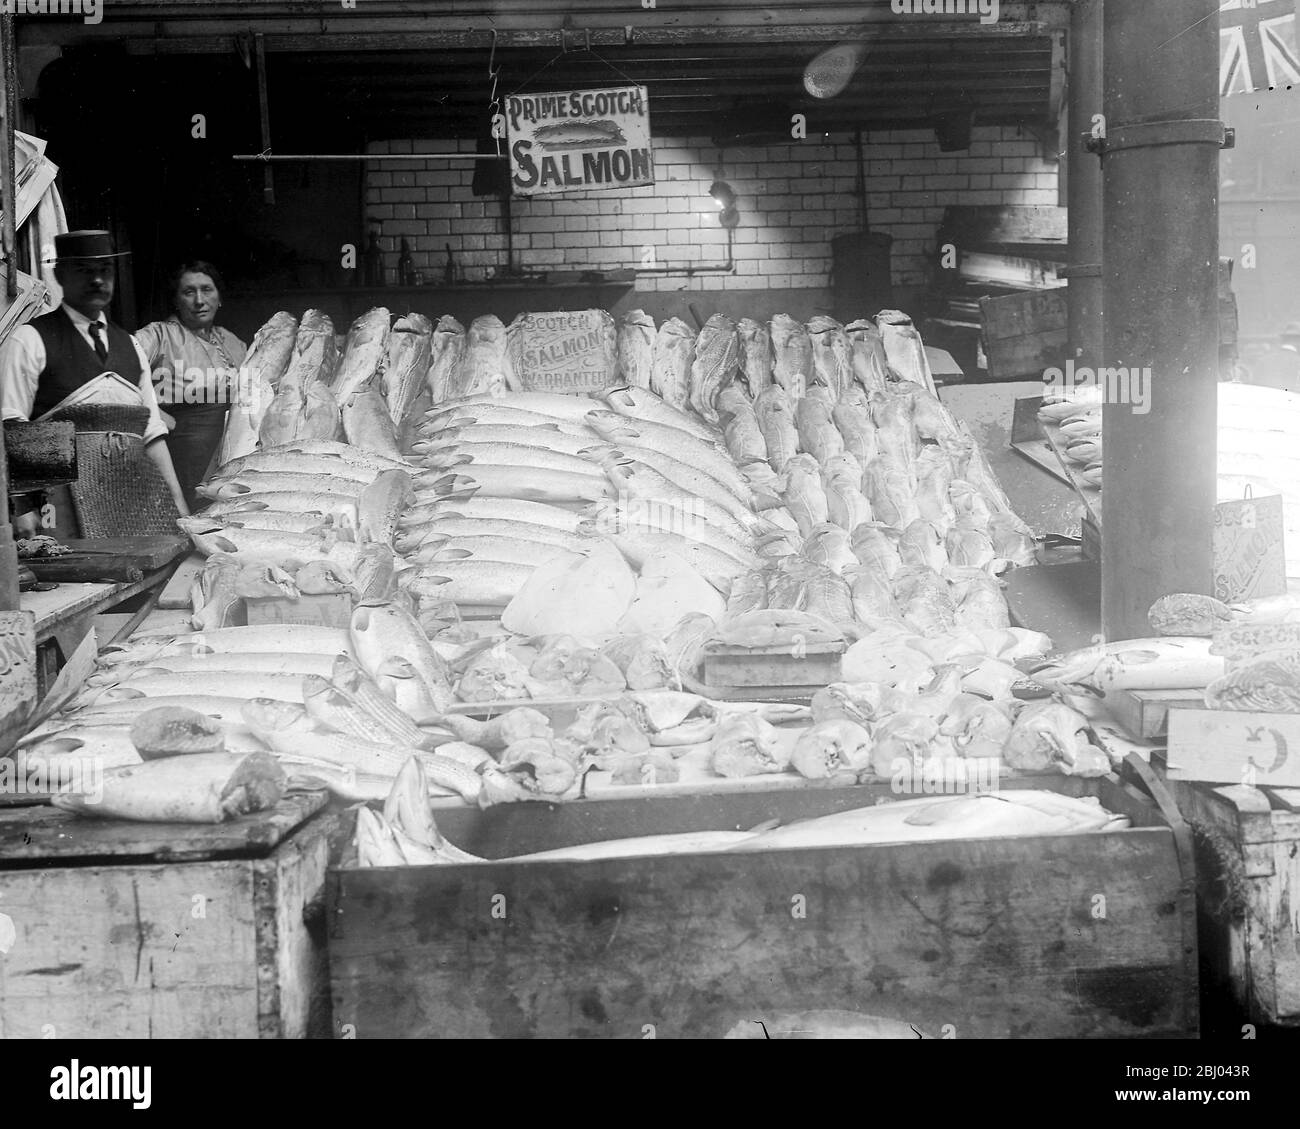 Poisson Stal pris pour Cassell's. - mai 1917 Banque D'Images